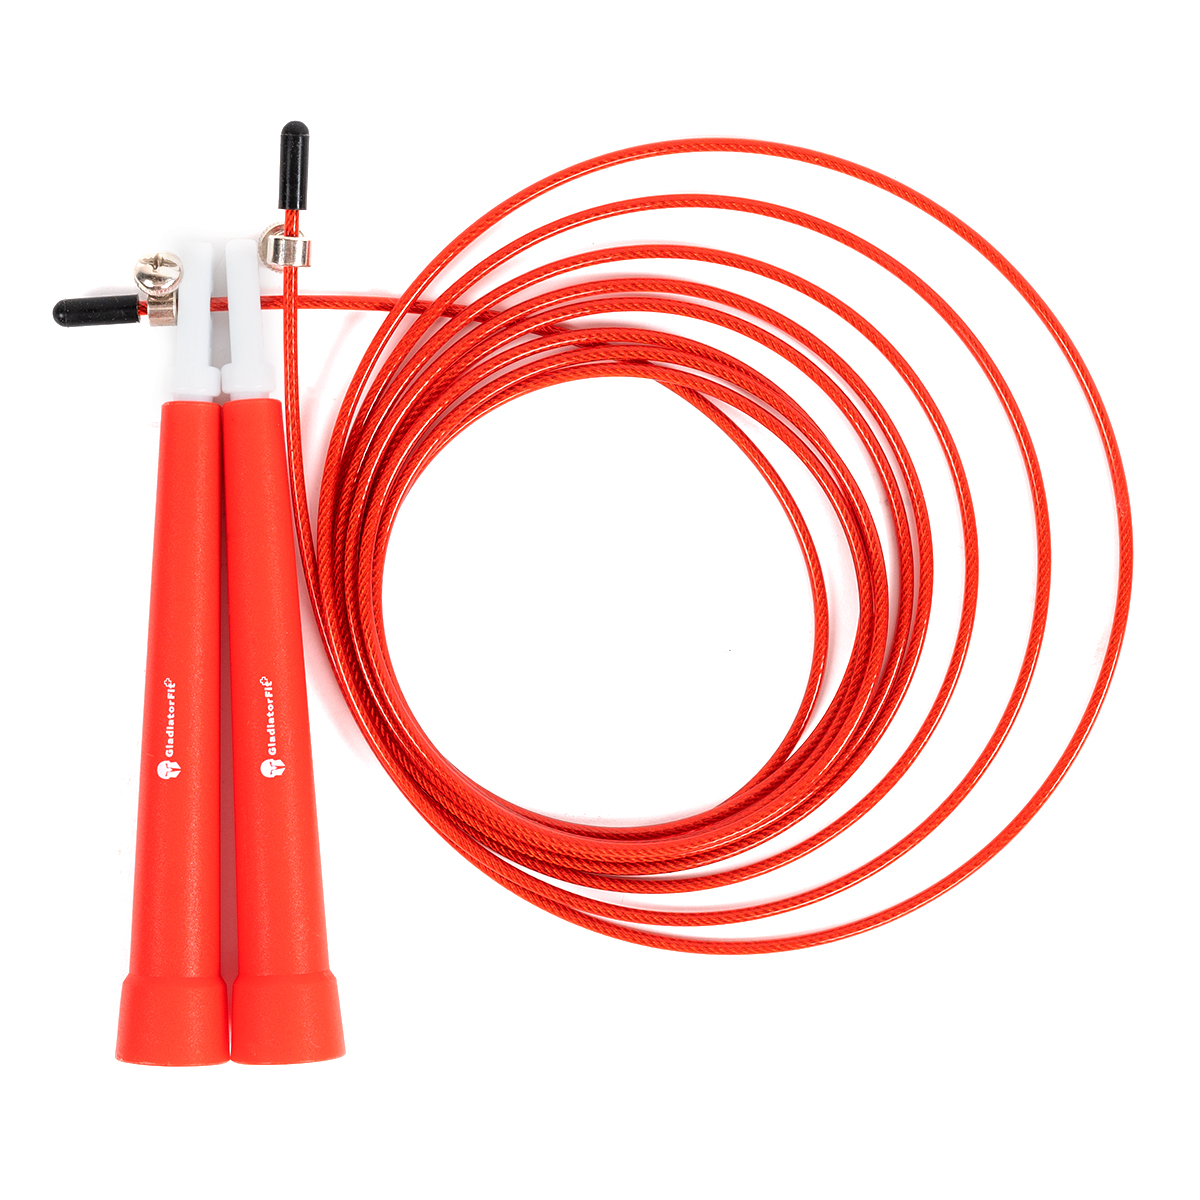 Cuerda De Saltar De Plástico 180cm Ajustable Con  Bolsa Gladiatorfit - rojo - 